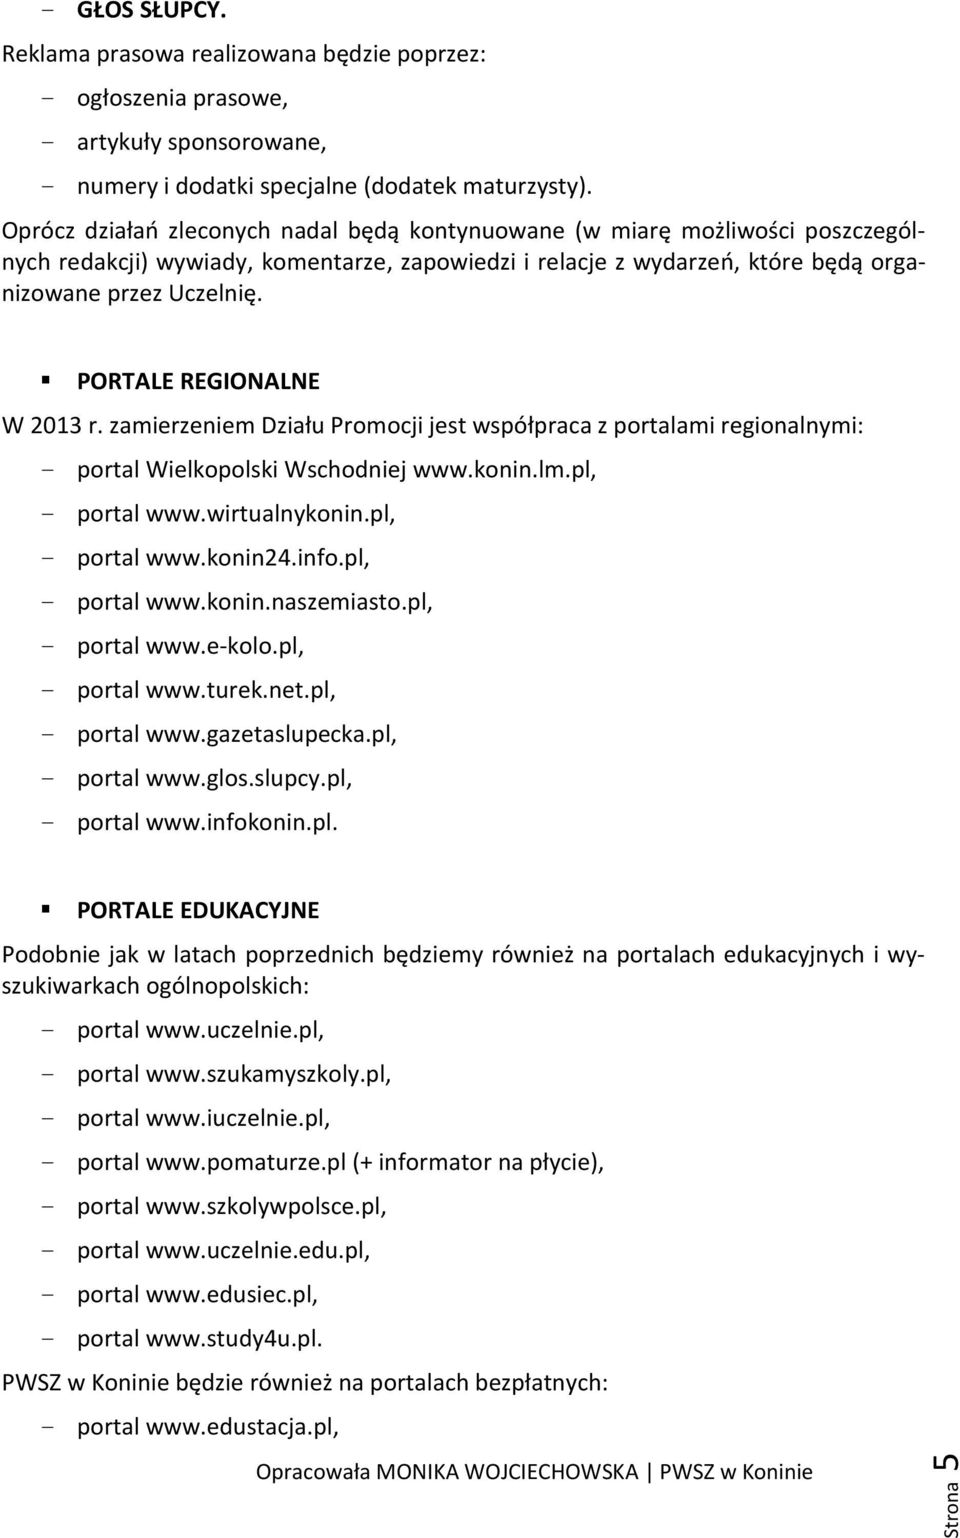 PORTALE REGIONALNE W 2013 r. zamierzeniem Działu Promocji jest współpraca z portalami regionalnymi: - portal Wielkopolski Wschodniej www.konin.lm.pl, - portal www.wirtualnykonin.pl, - portal www.konin24.